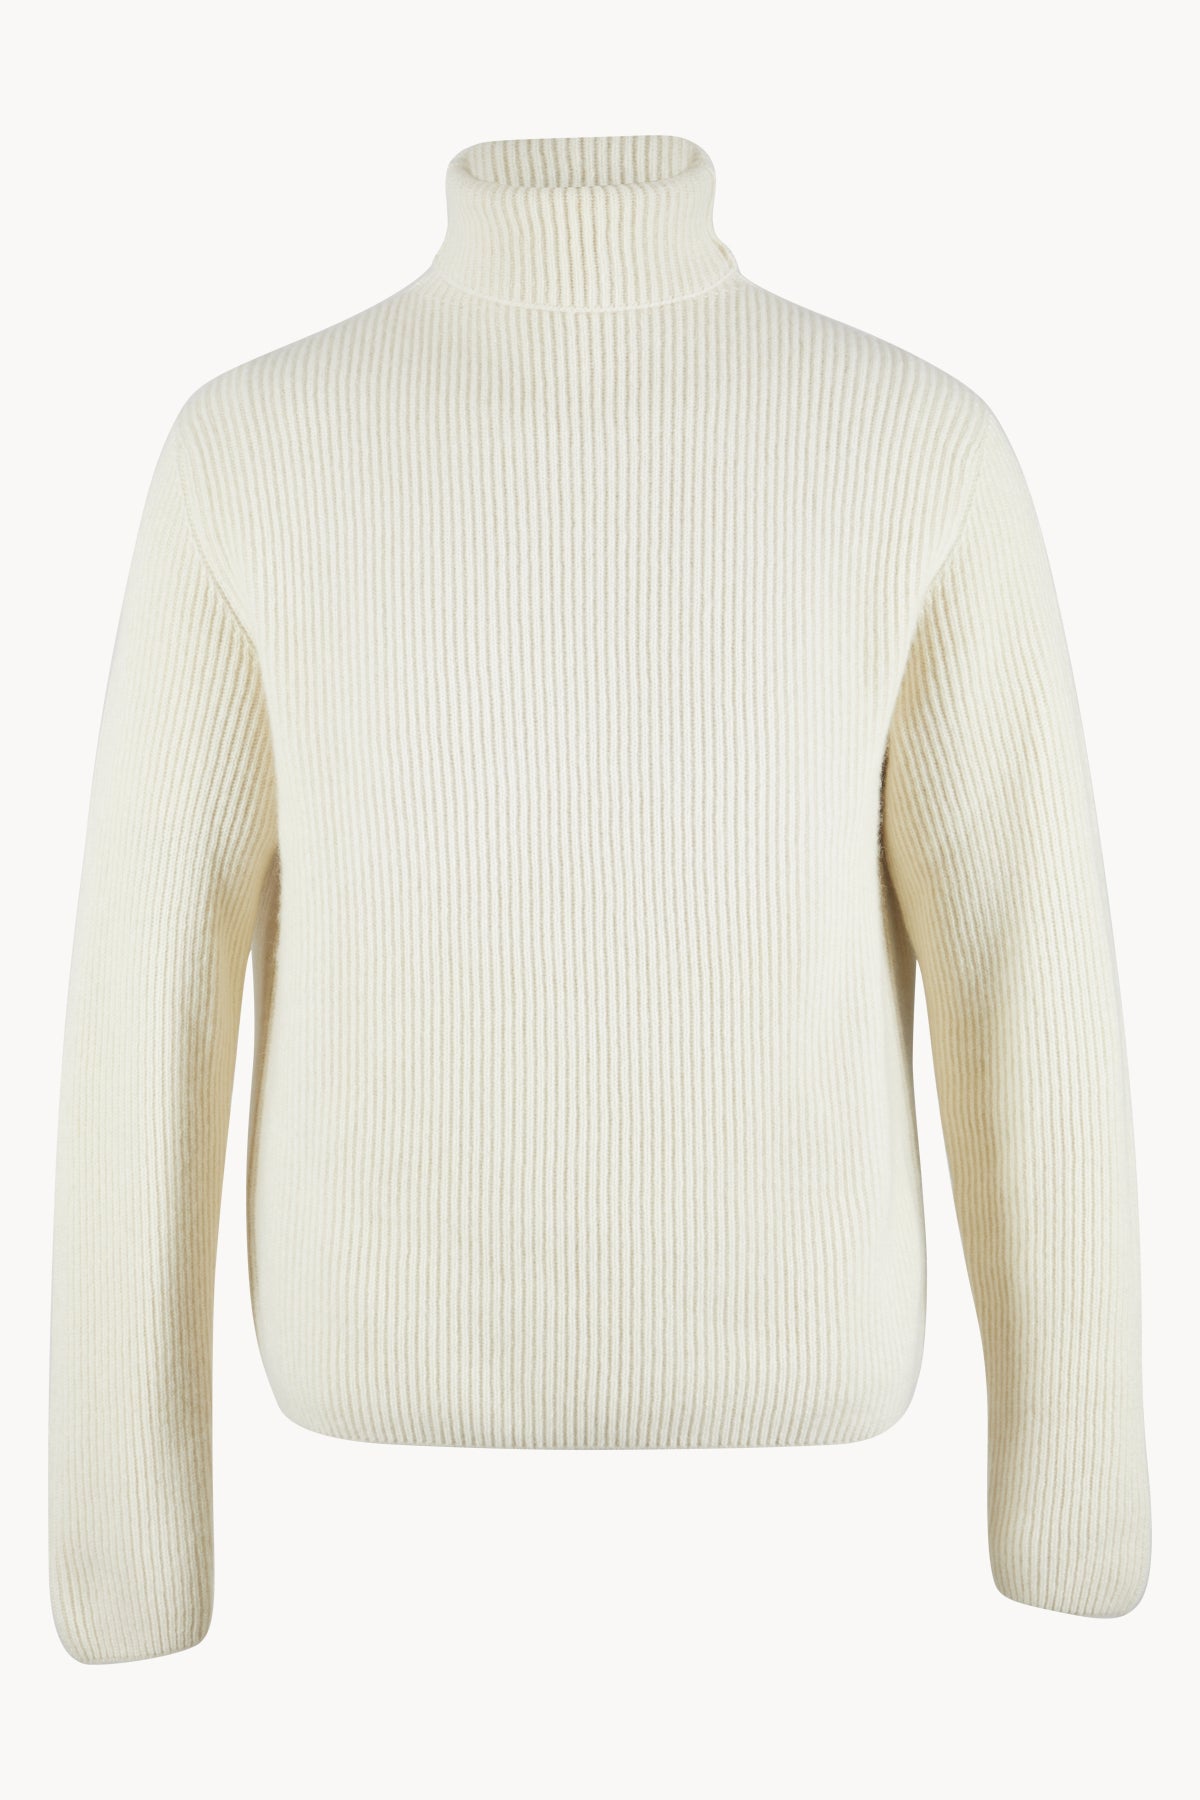 Colette Sweater in Cashmere